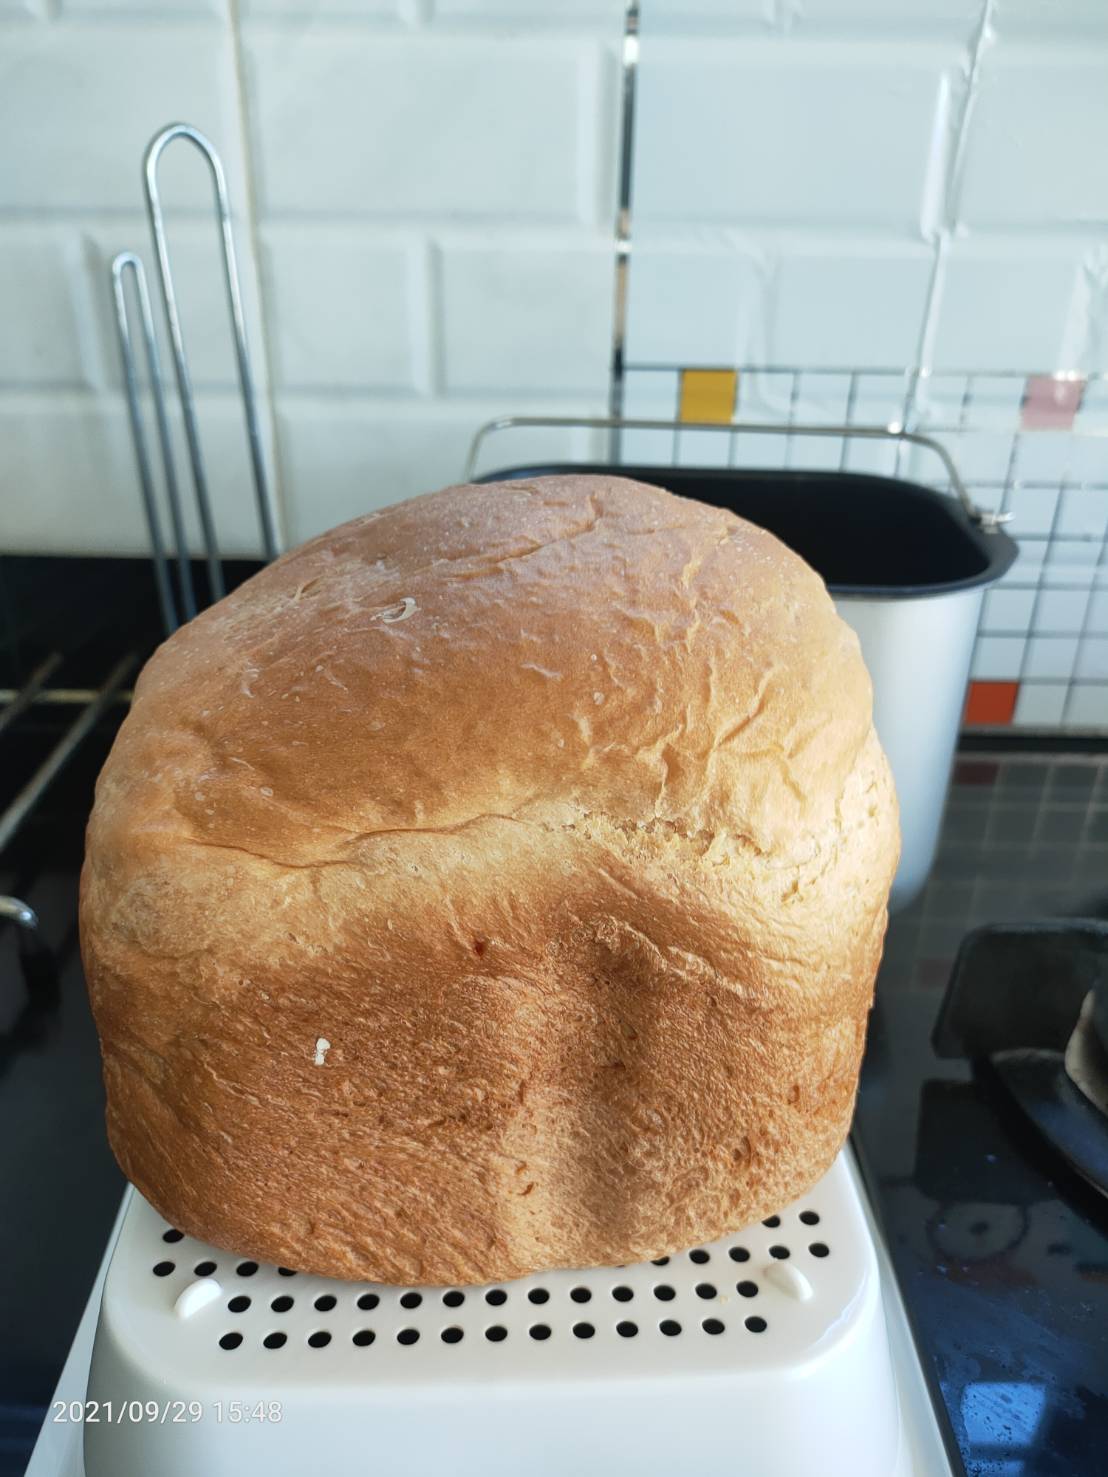 ขนมปังอบเสร็จพักบนตะแกรง
ขนมปังพร้อมหั่น